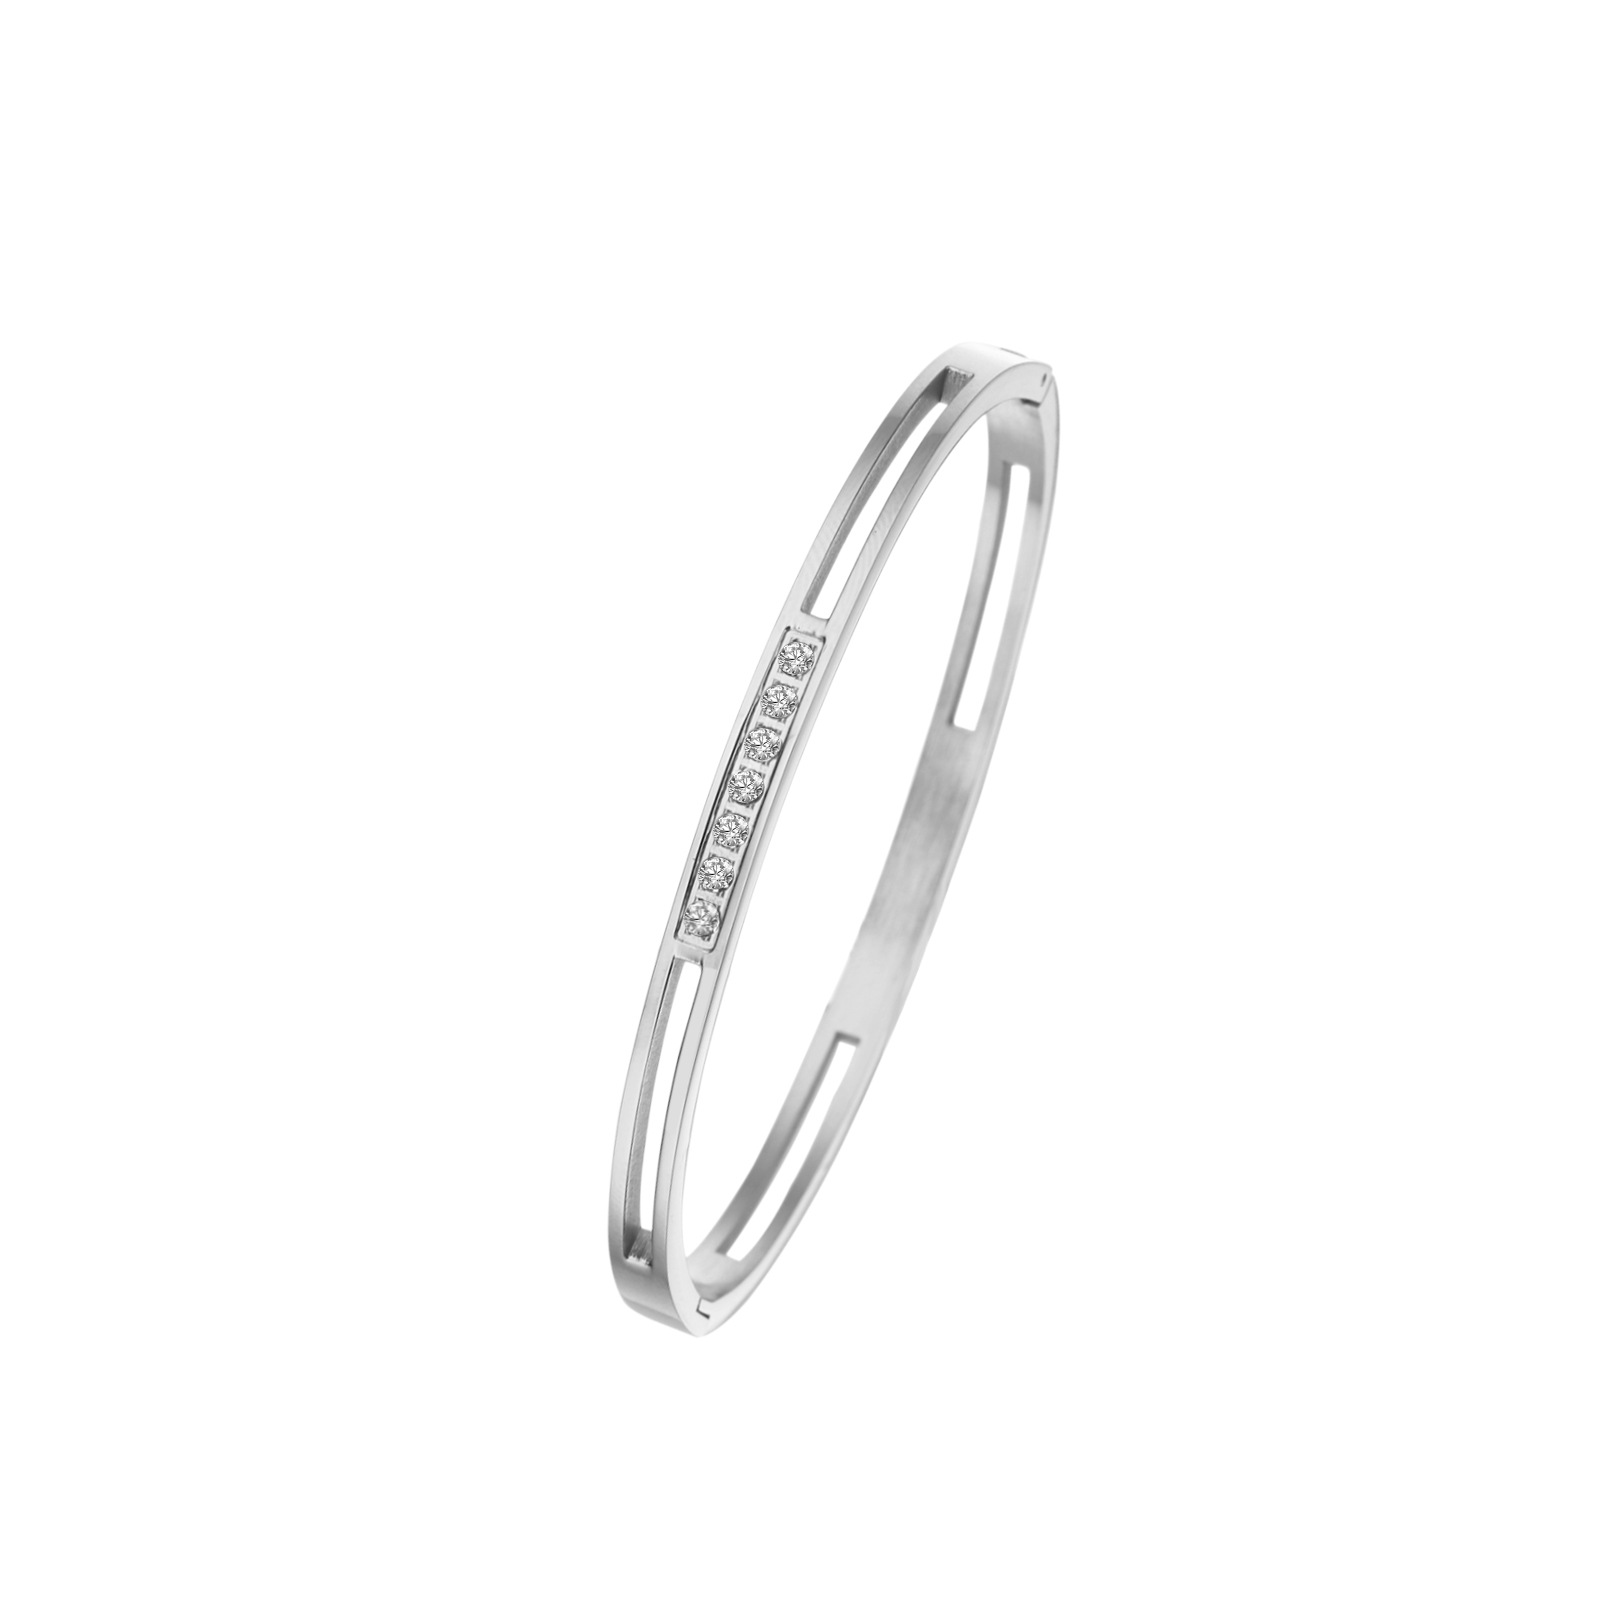 Silver bracelet 4mm